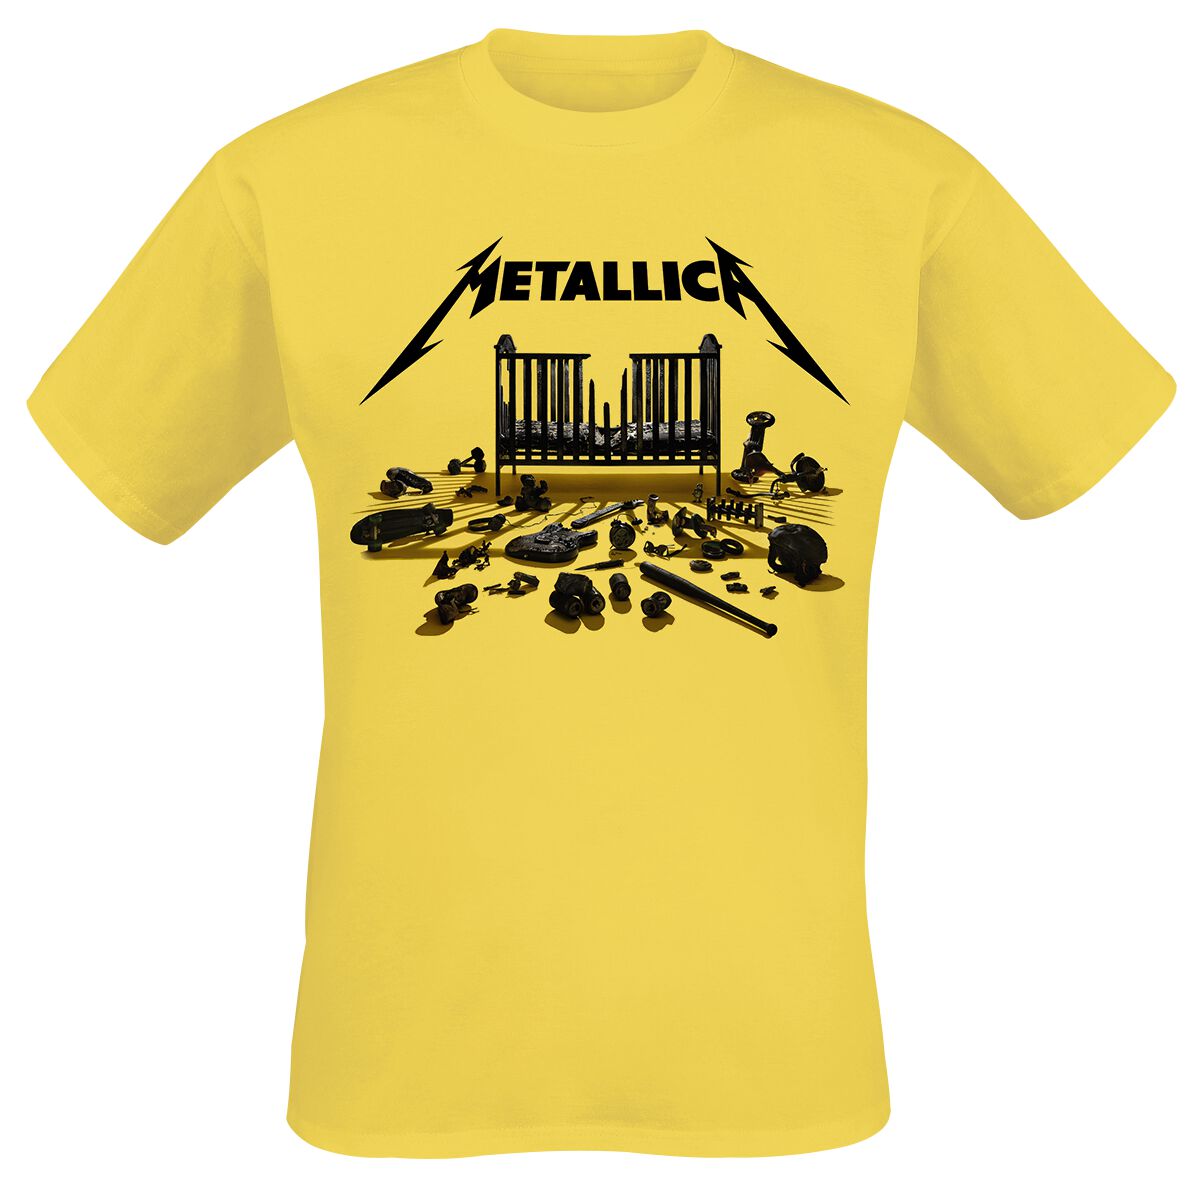 Metallica T-Shirt - Simplified Cover (M72) - S bis 3XL - für Männer - Größe XXL - gelb  - Lizenziertes Merchandise!